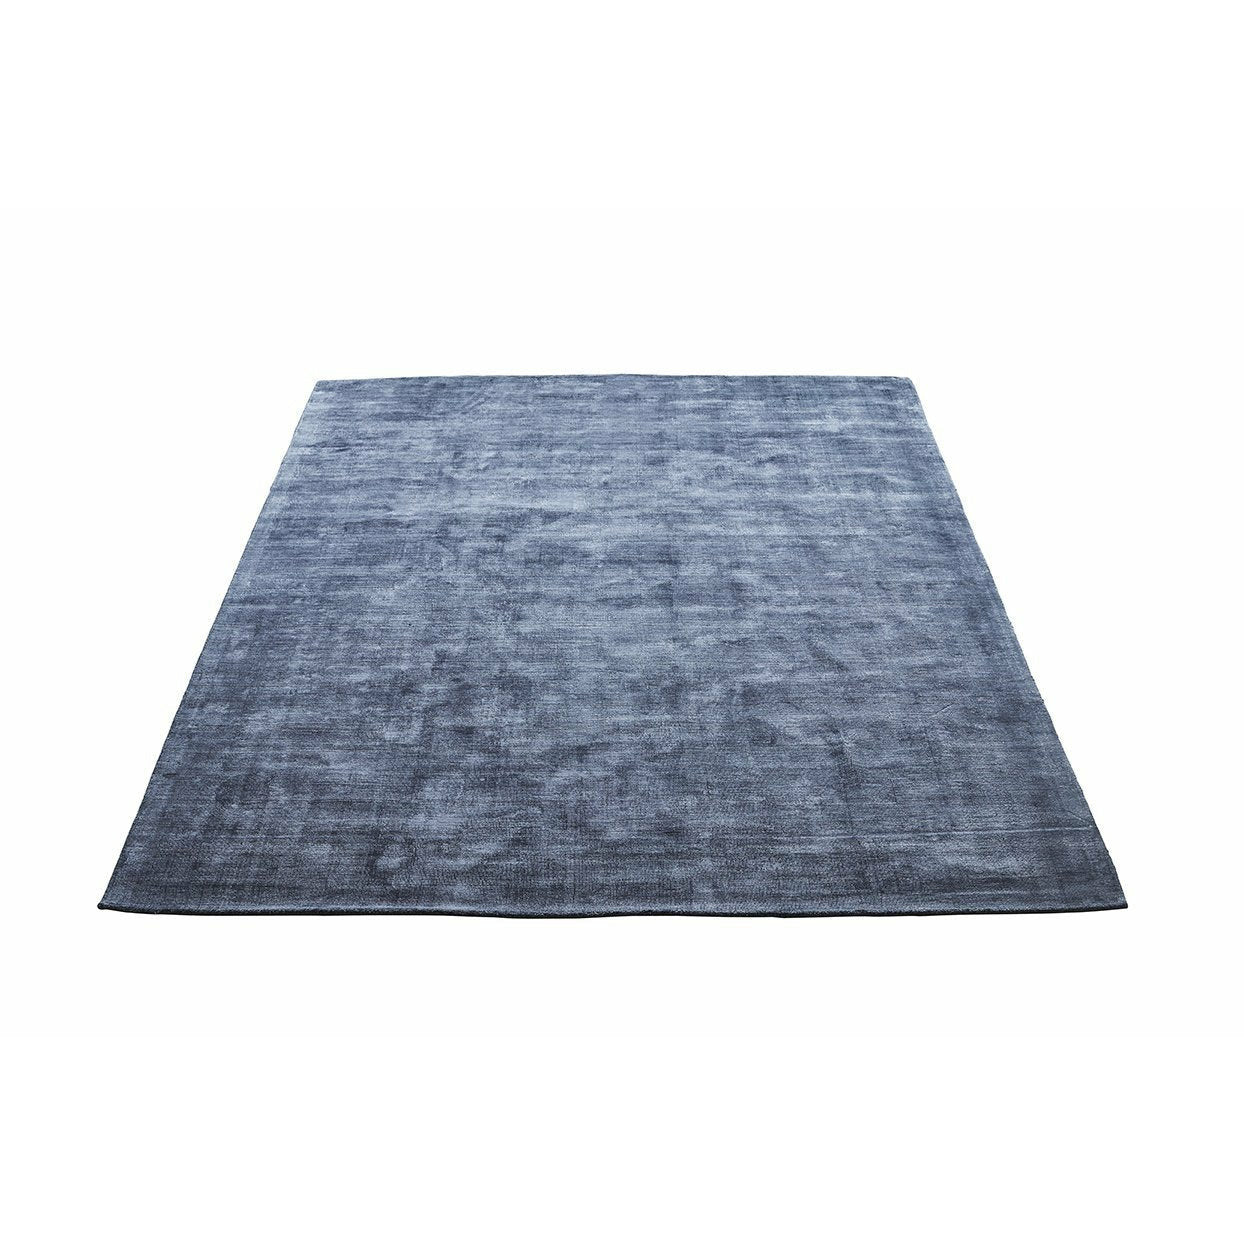 Massimo karma koberec umyl modrou, 160x230 cm